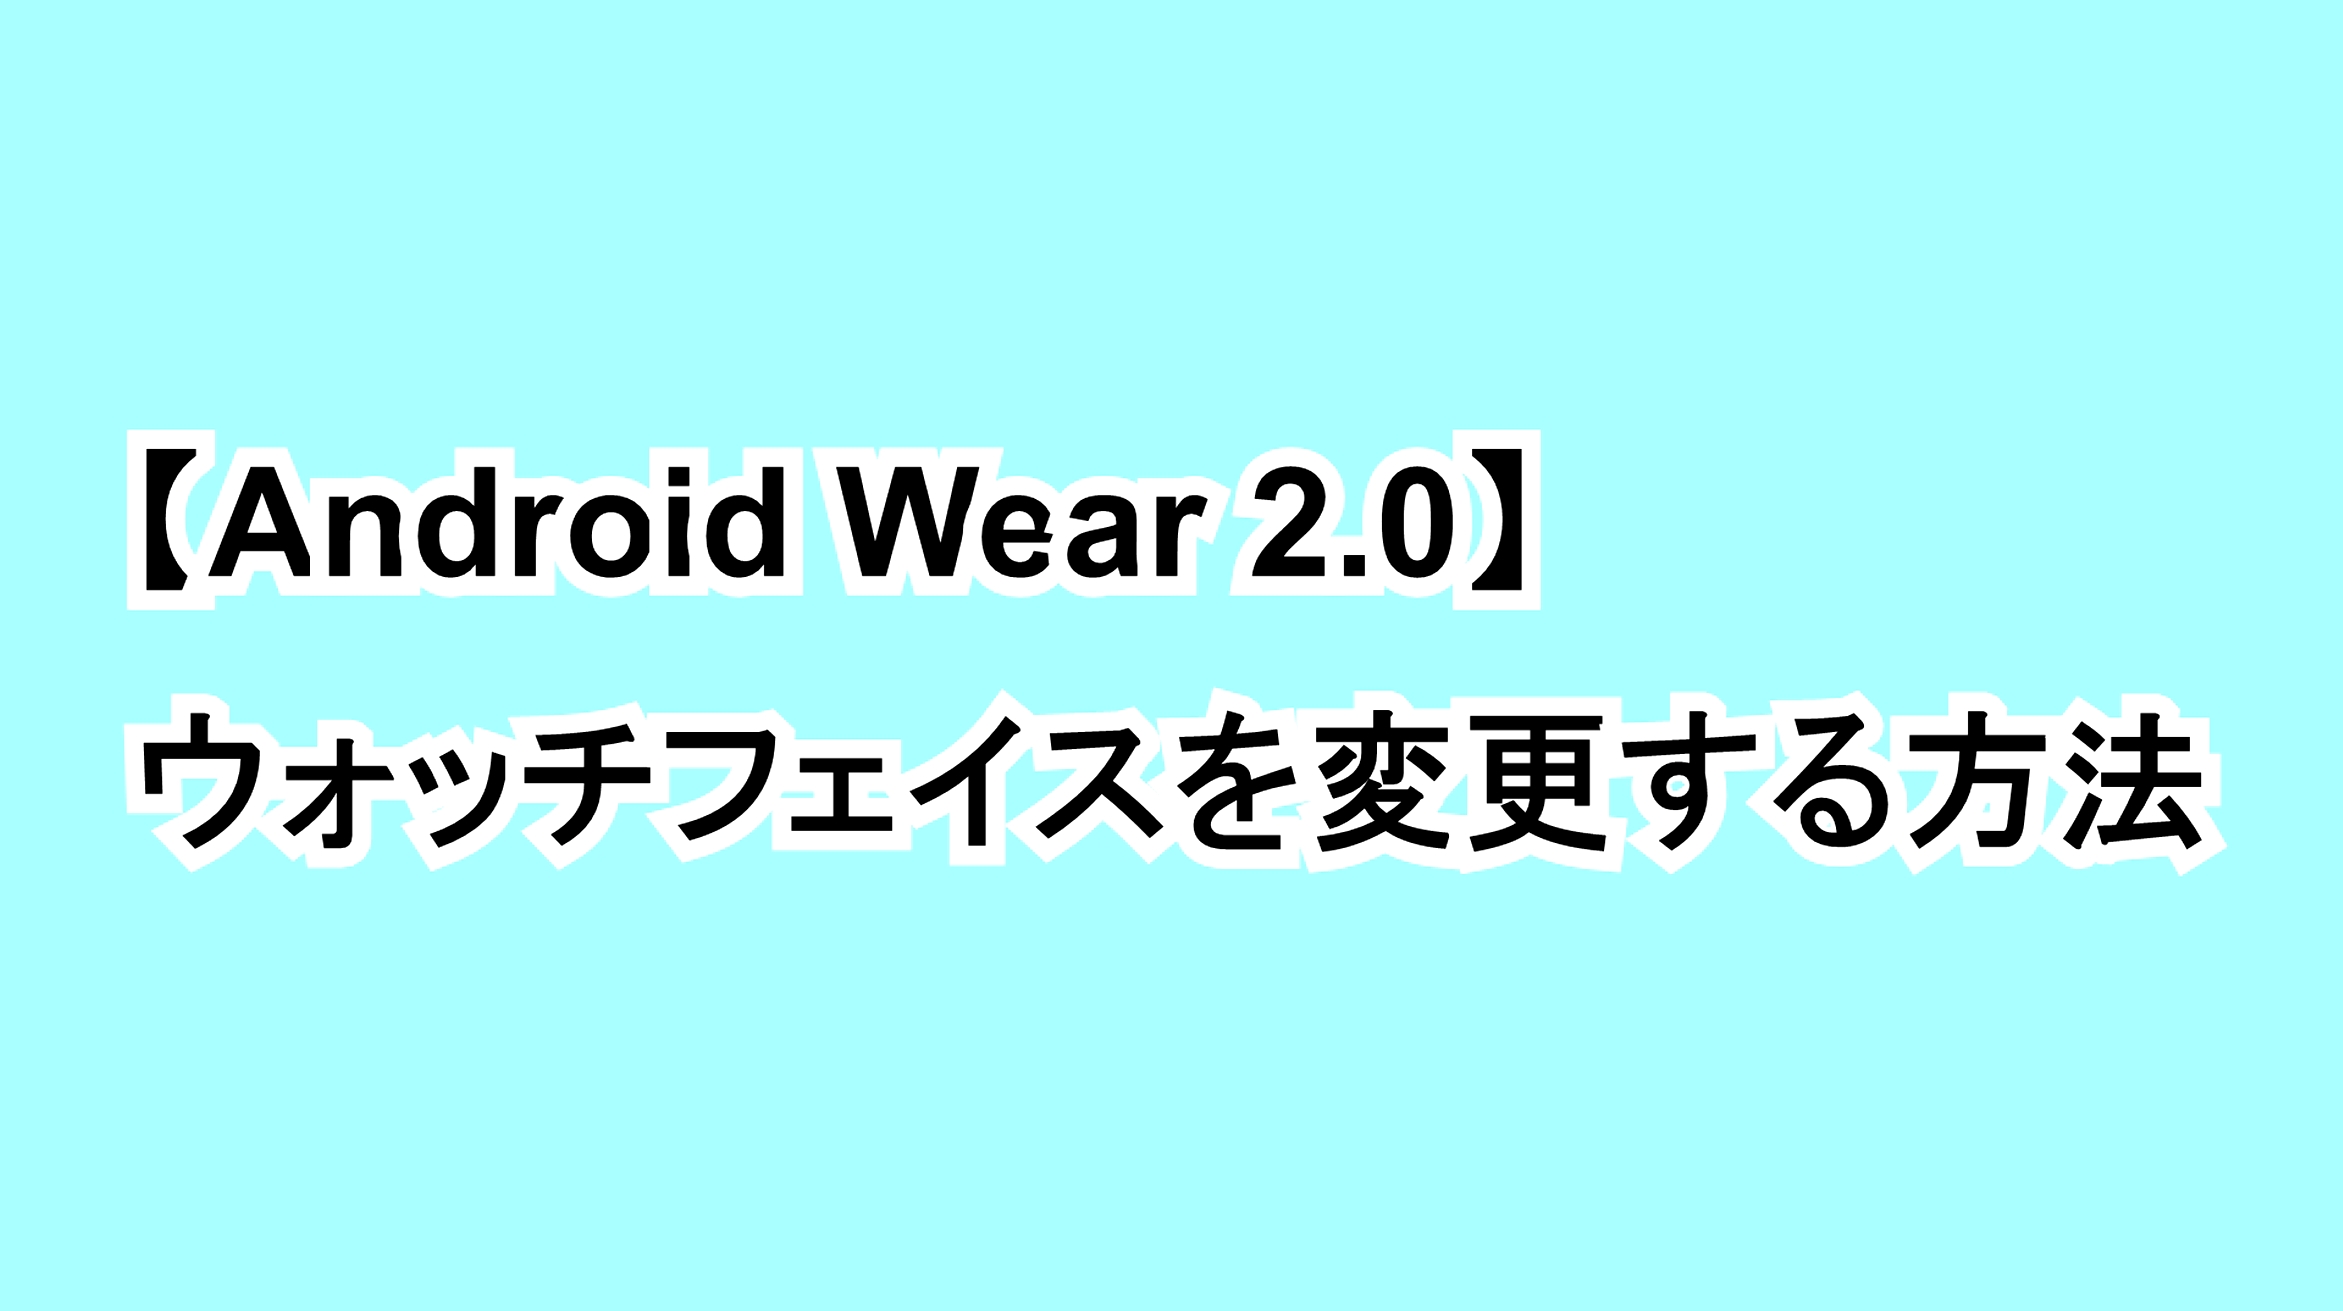 【Android Wear 2.0】ウォッチフェイスを変更する方法